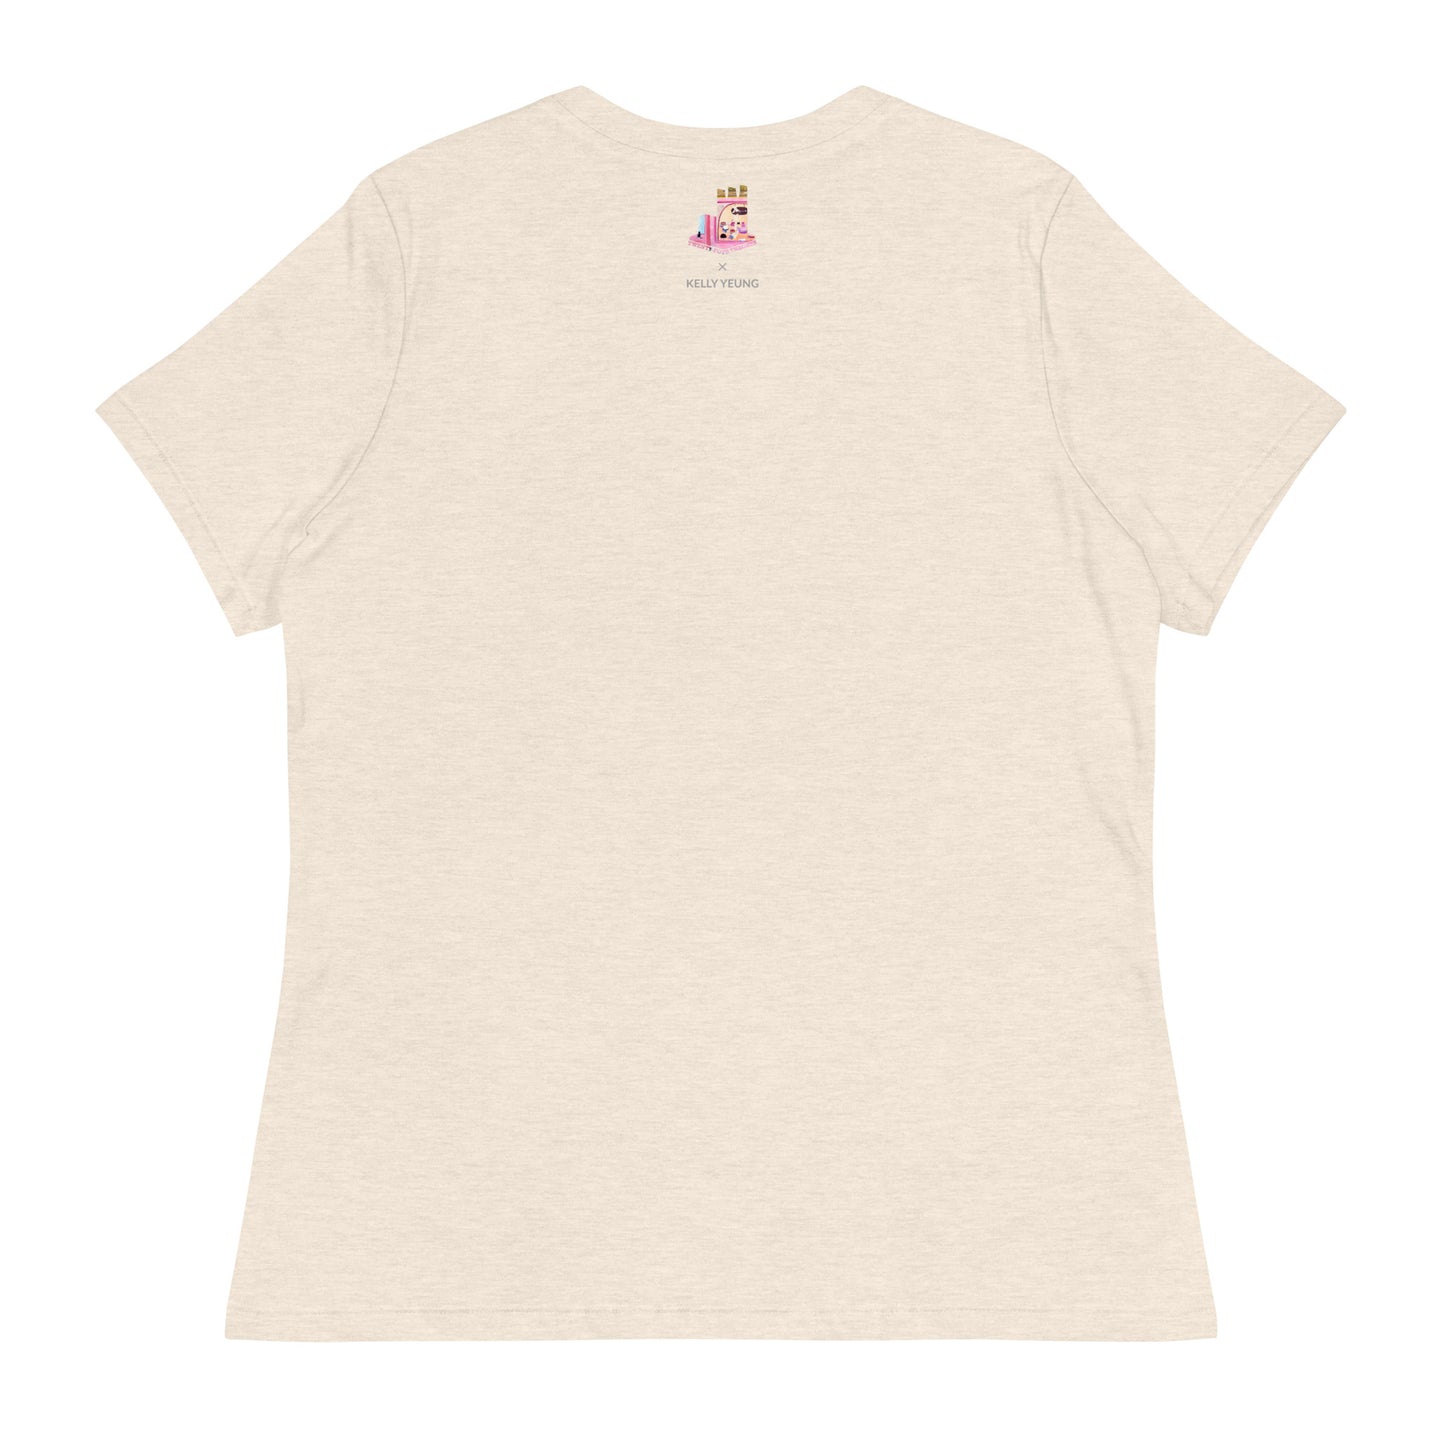 Cat Cafe Women's T-Shirt